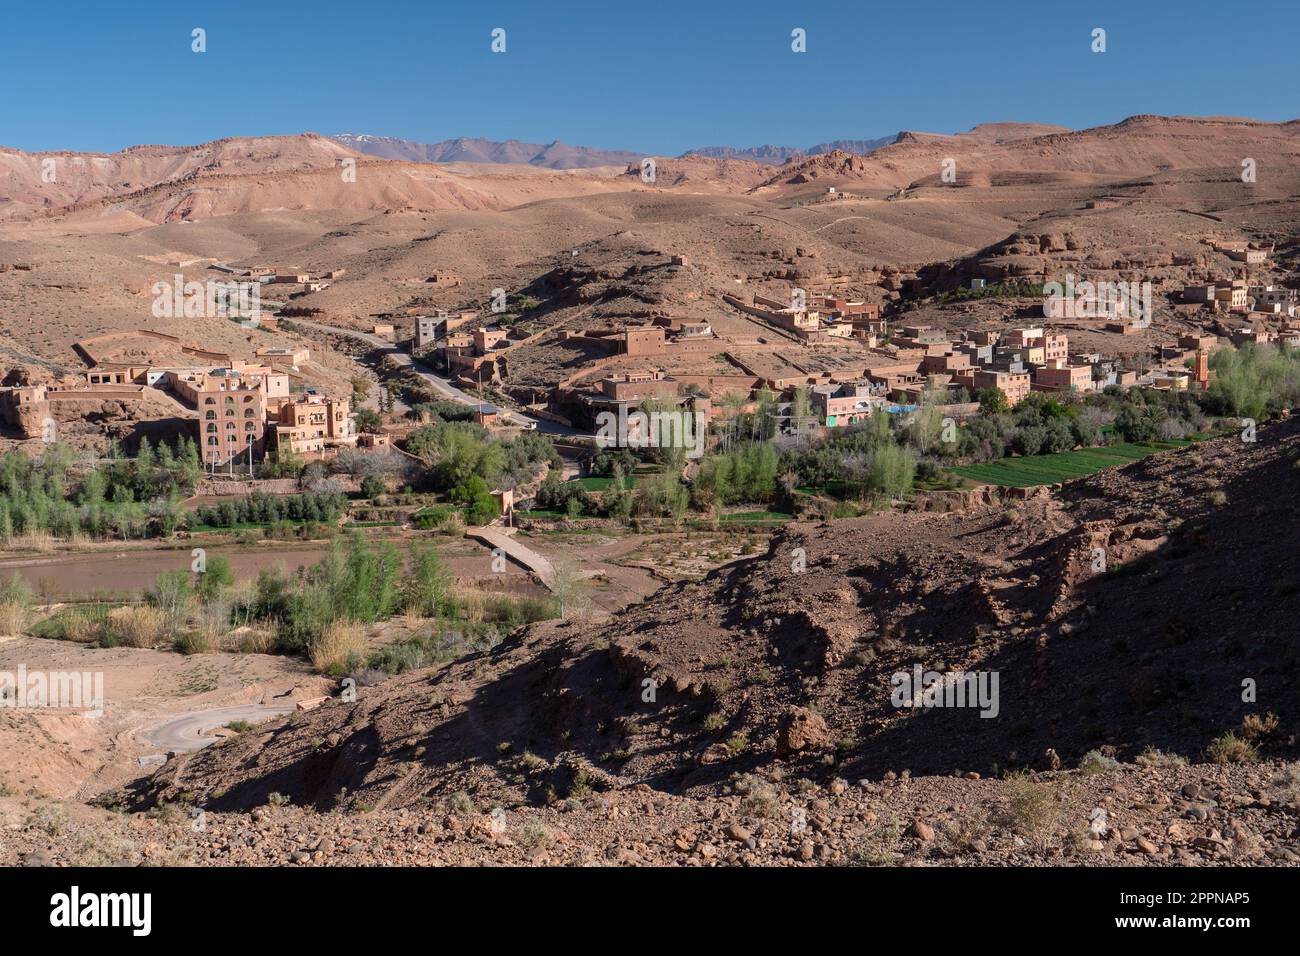 Blick auf ein traditionellen Berberdorfes im Hohen Atlas mit Flusslandschaft Stock Photo